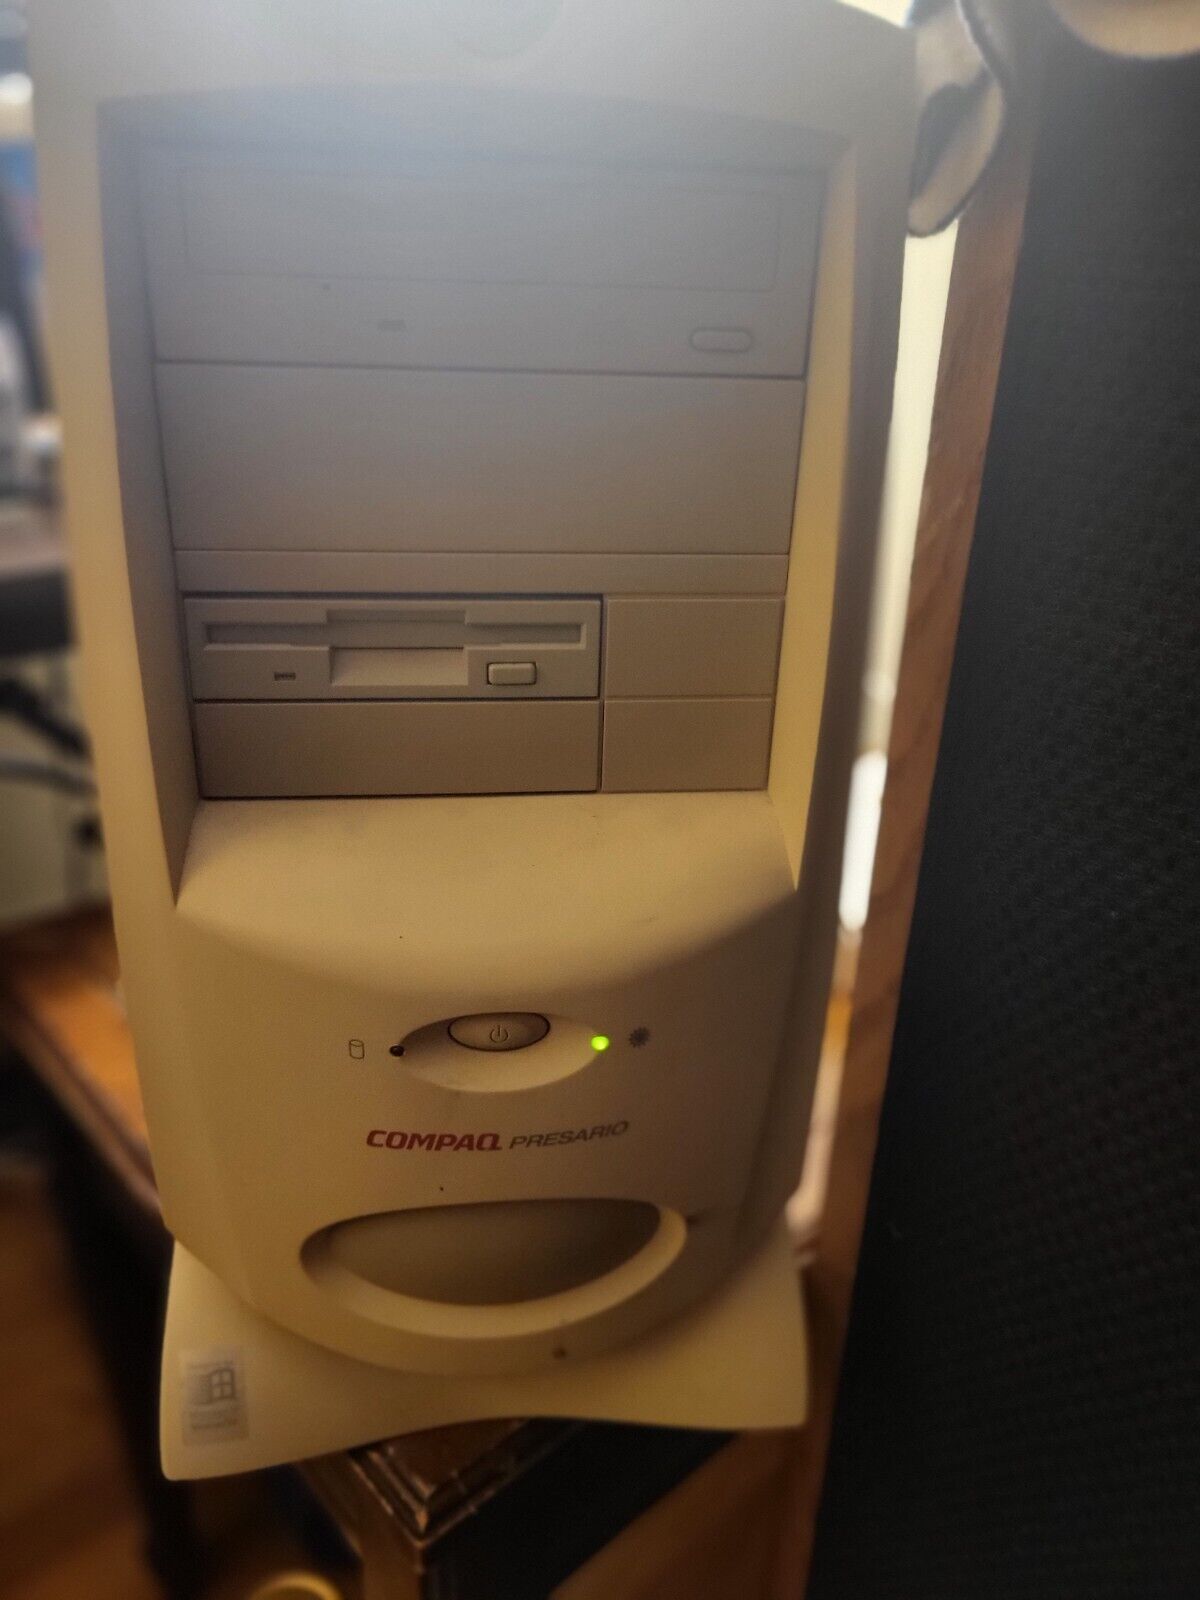 *UNTESTED, POWERS ON* Vintage Compaq Presario 7360 Desktop Computer